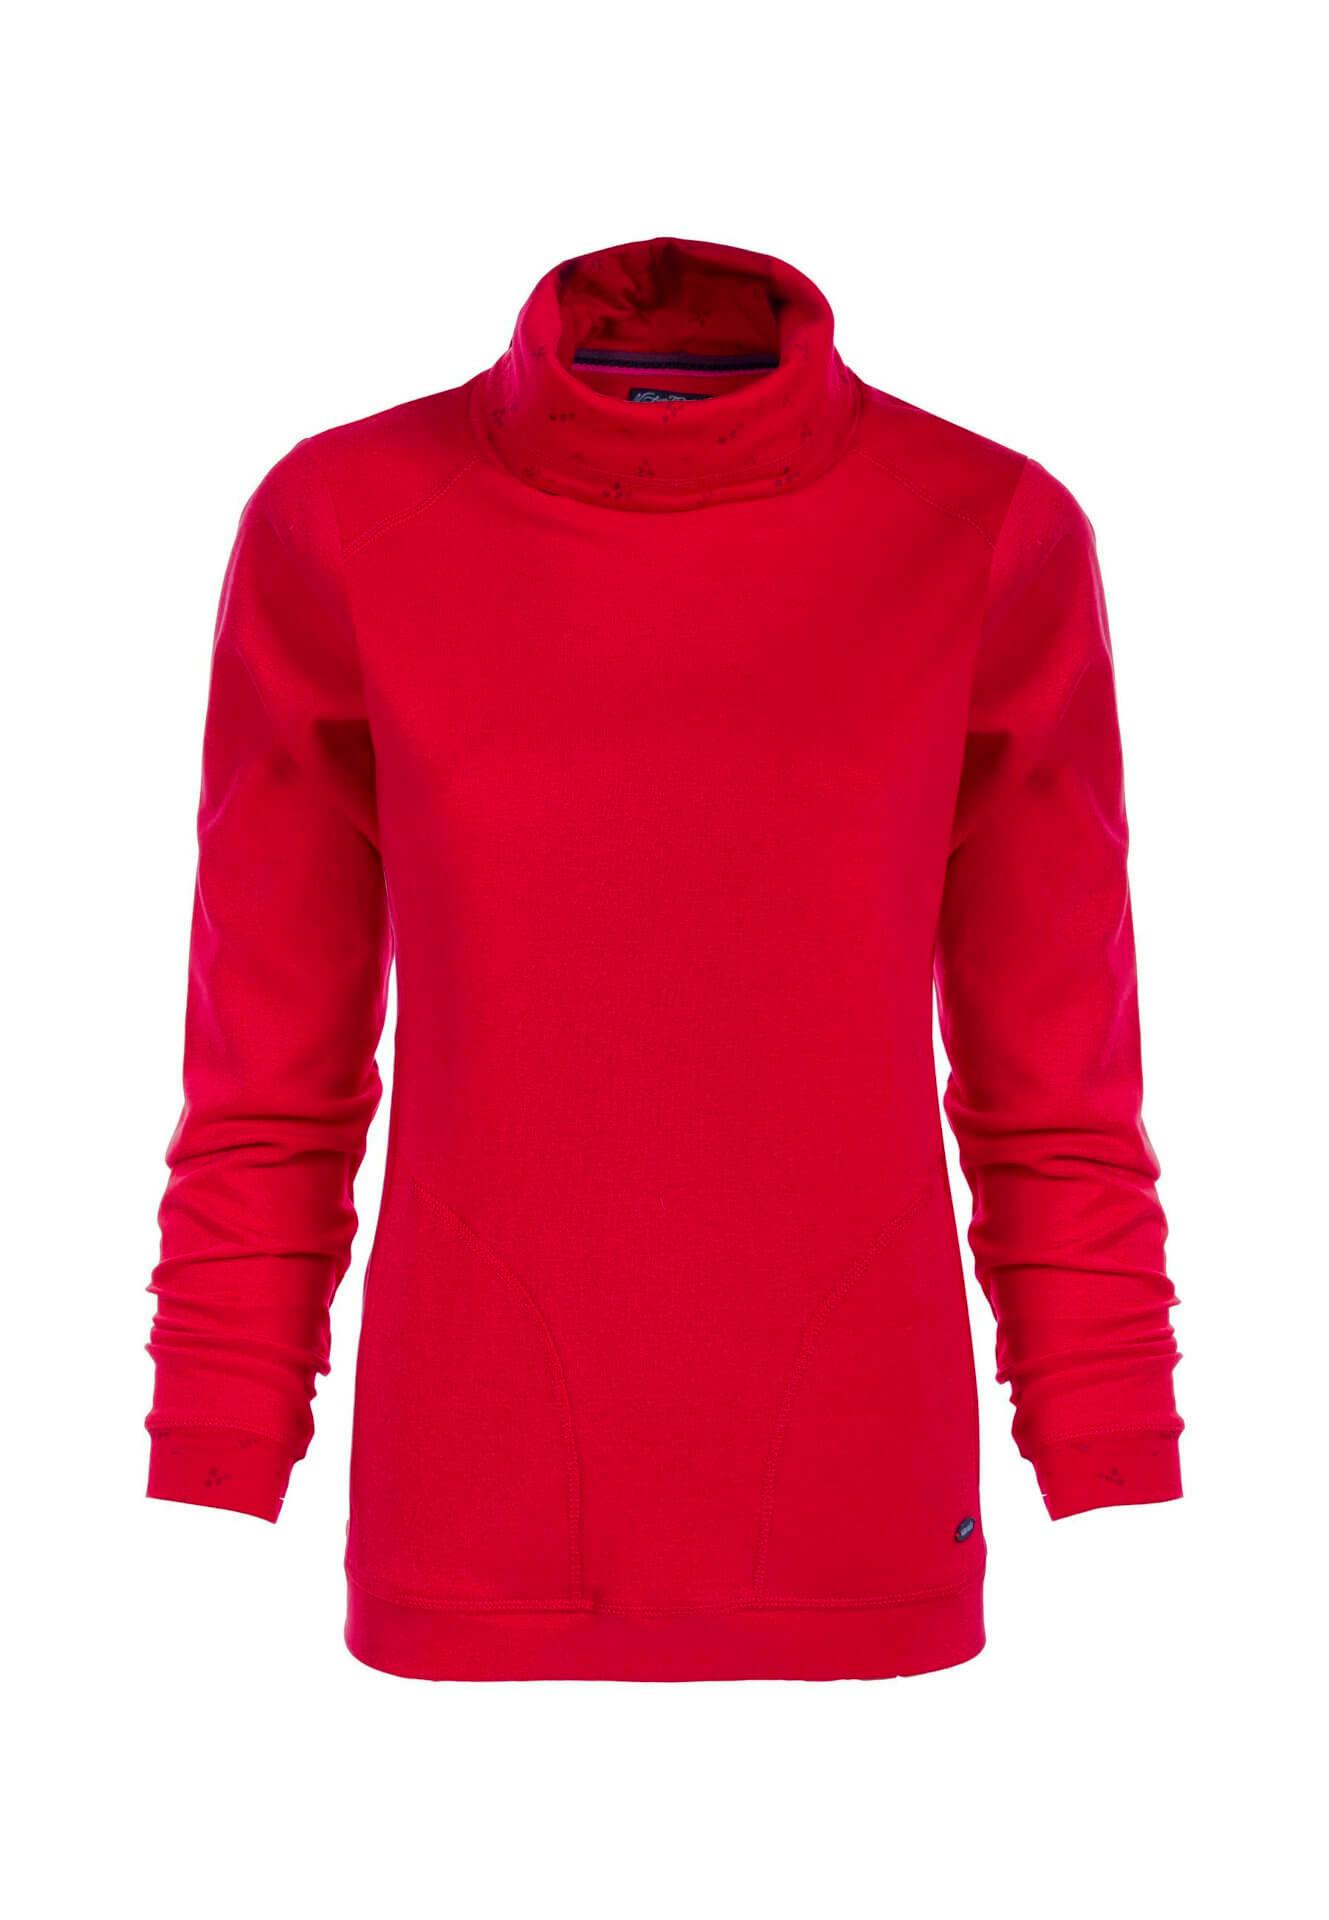 Artikel klicken und genauer betrachten! - Soquesto Sweatshirt Laeticia
Details:
+ red+ kleiner Stehkragen+ 2 BauchtaschenMaterial100 % Baumwolle | im Online Shop kaufen